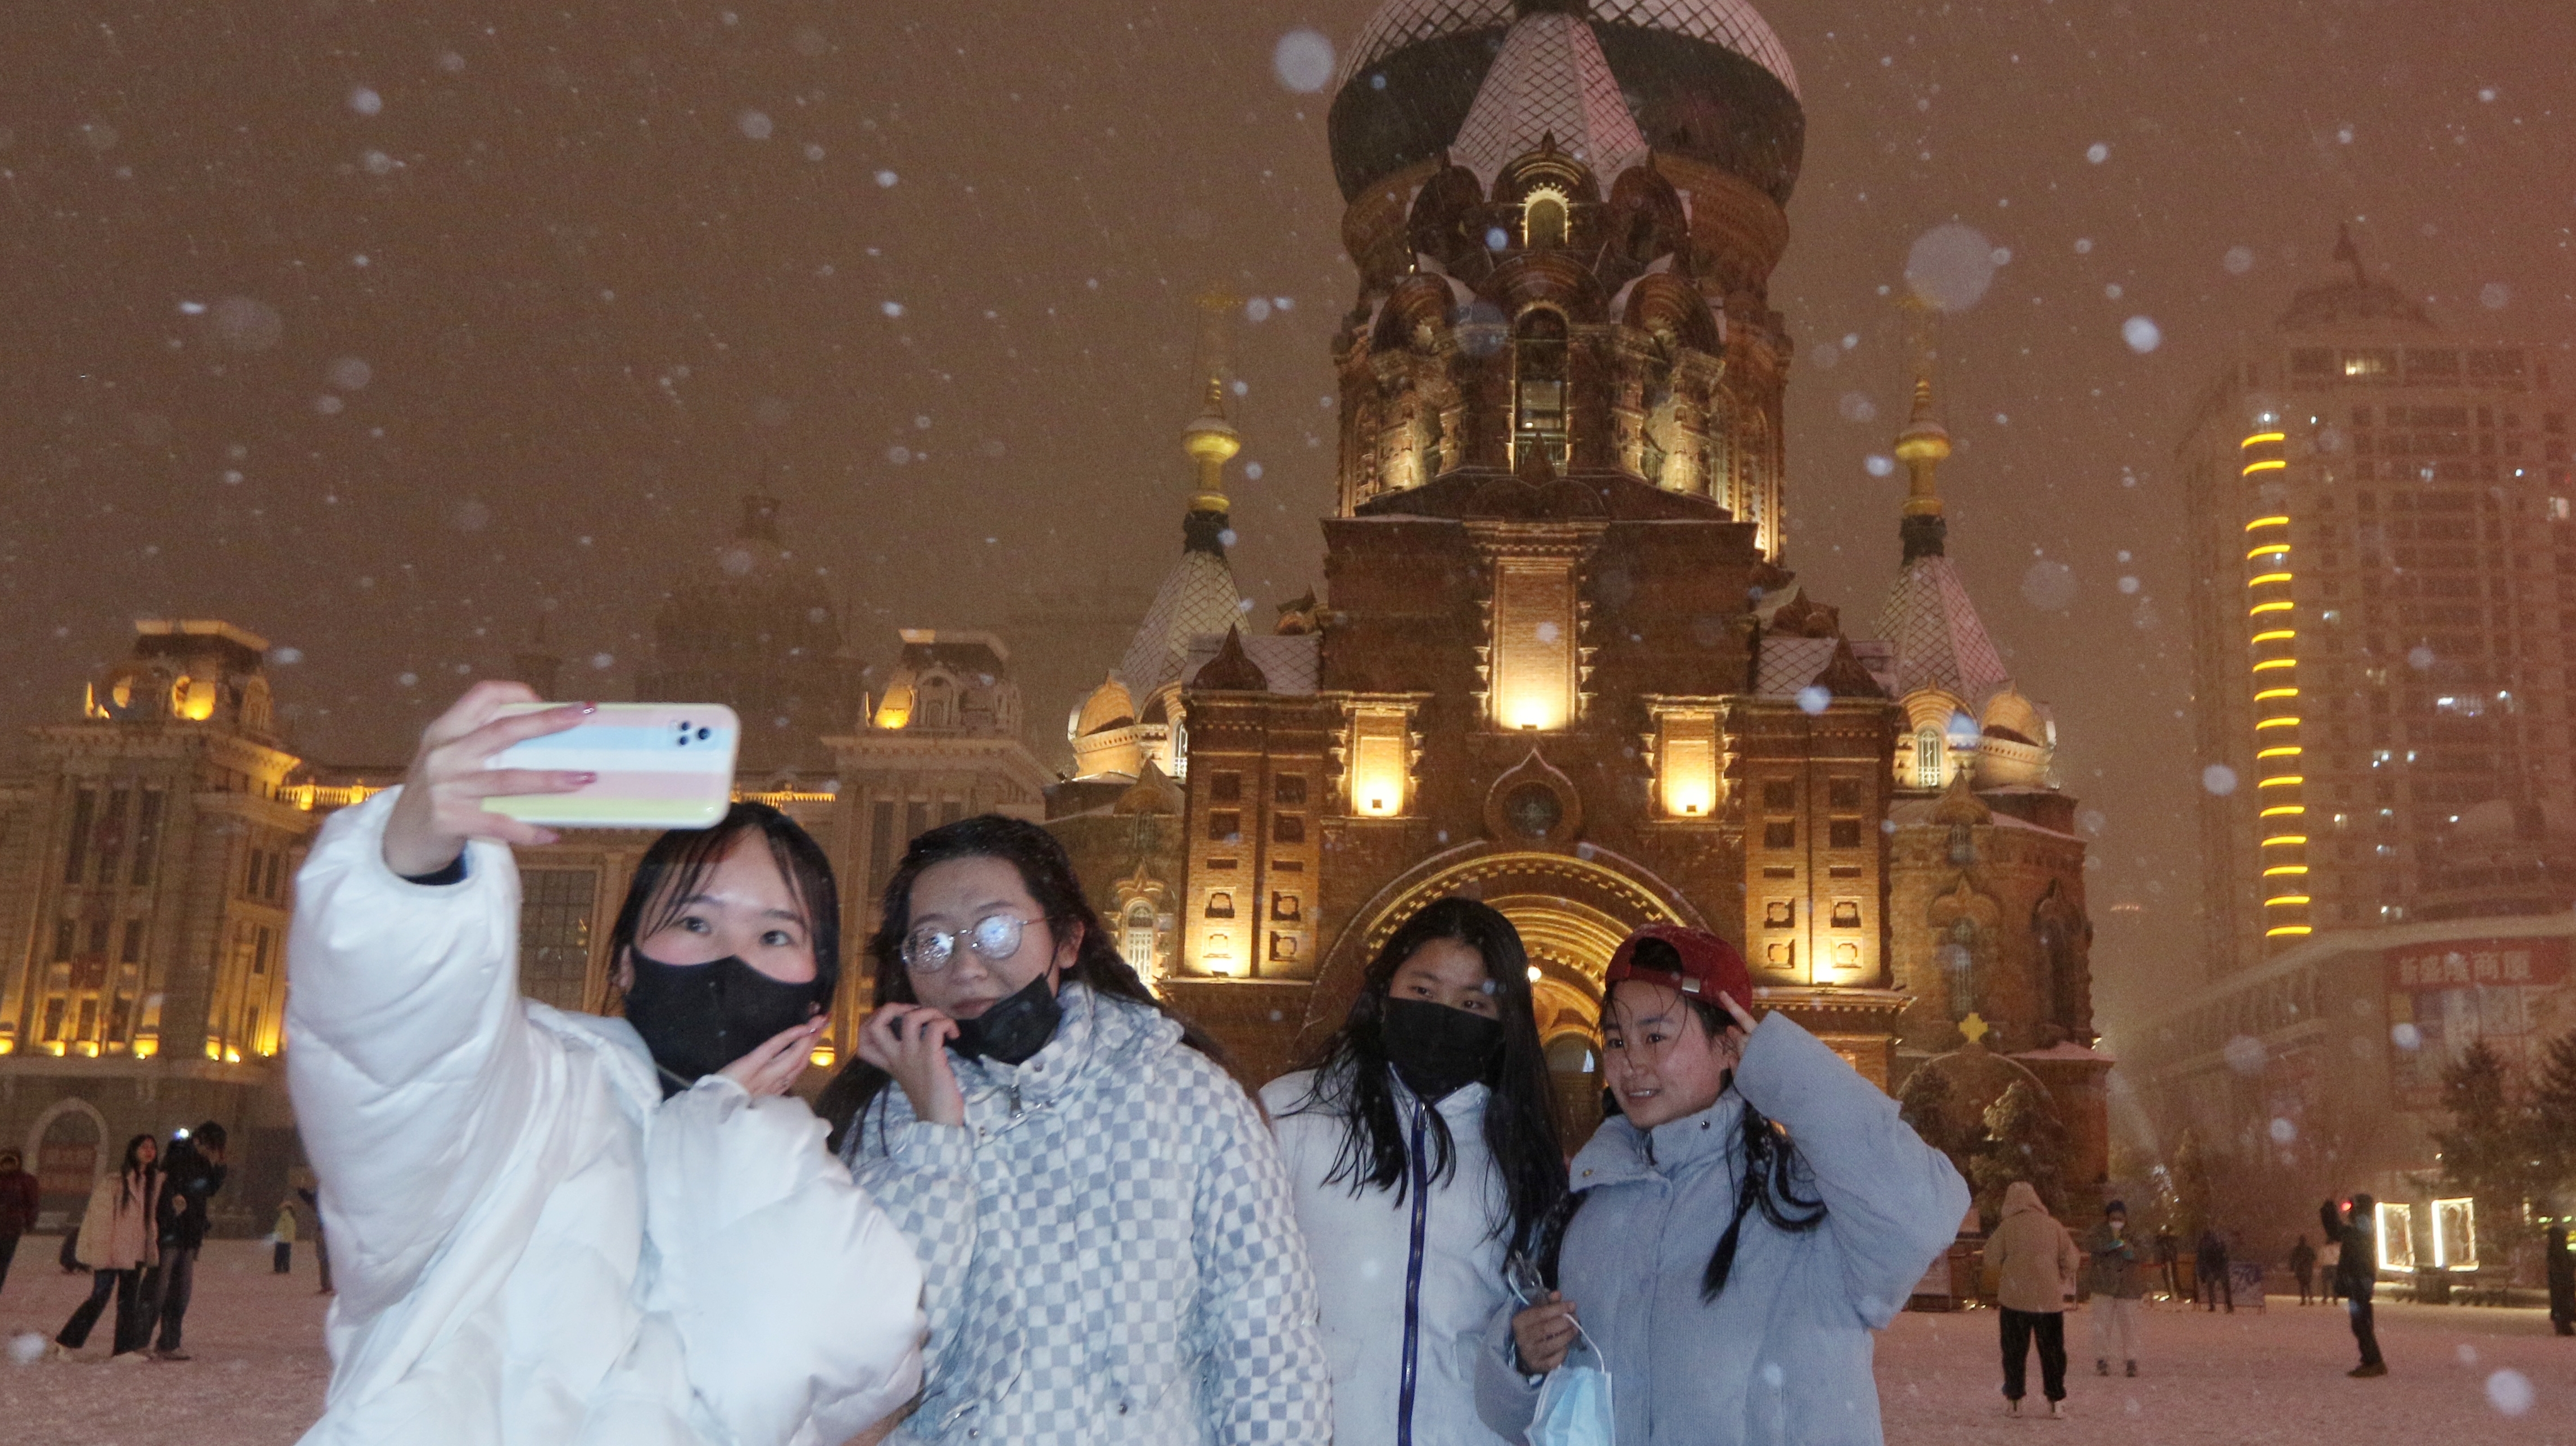 14日晚，冰城哈尔滨再度降雪。纷纷扬扬的雪花在夜色里飞舞，让建筑艺术广场上打卡的游客多了份惊喜。